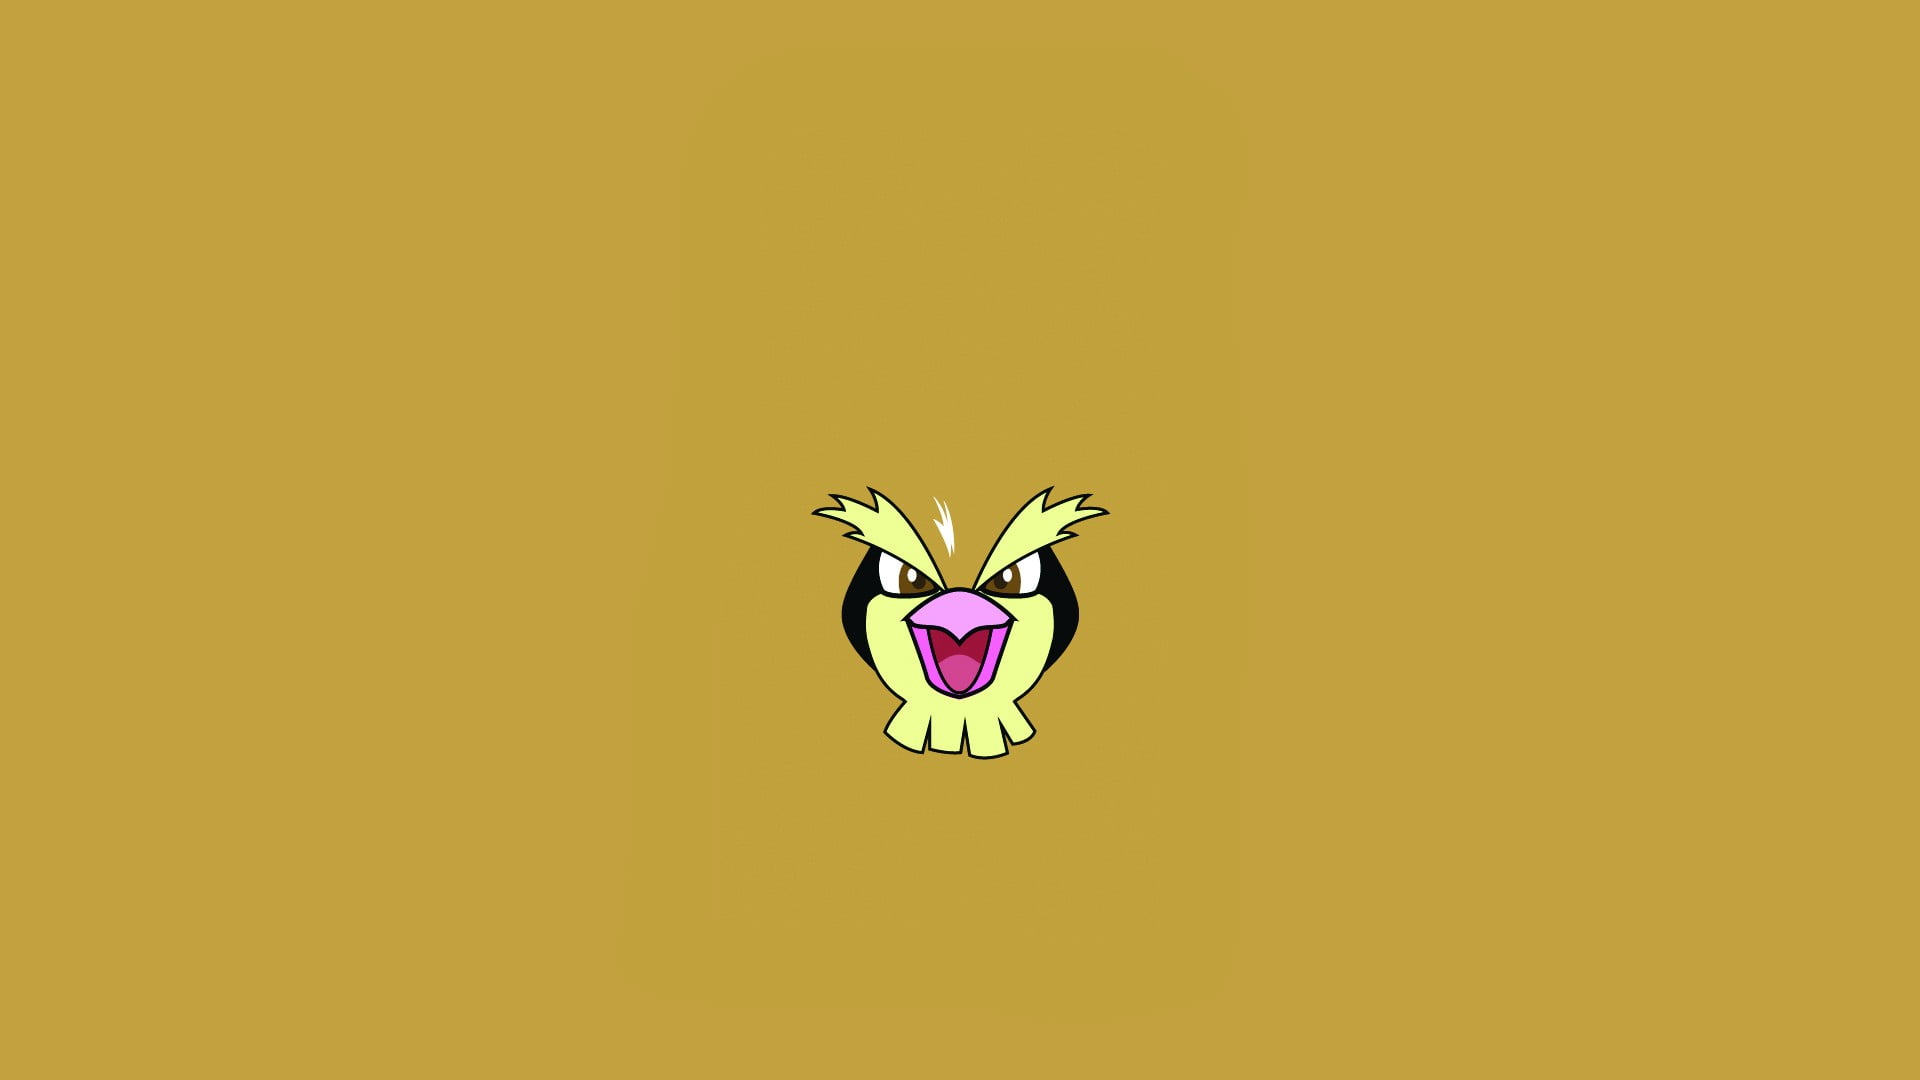 Pokemon Pidgeot illustration, Pokémon